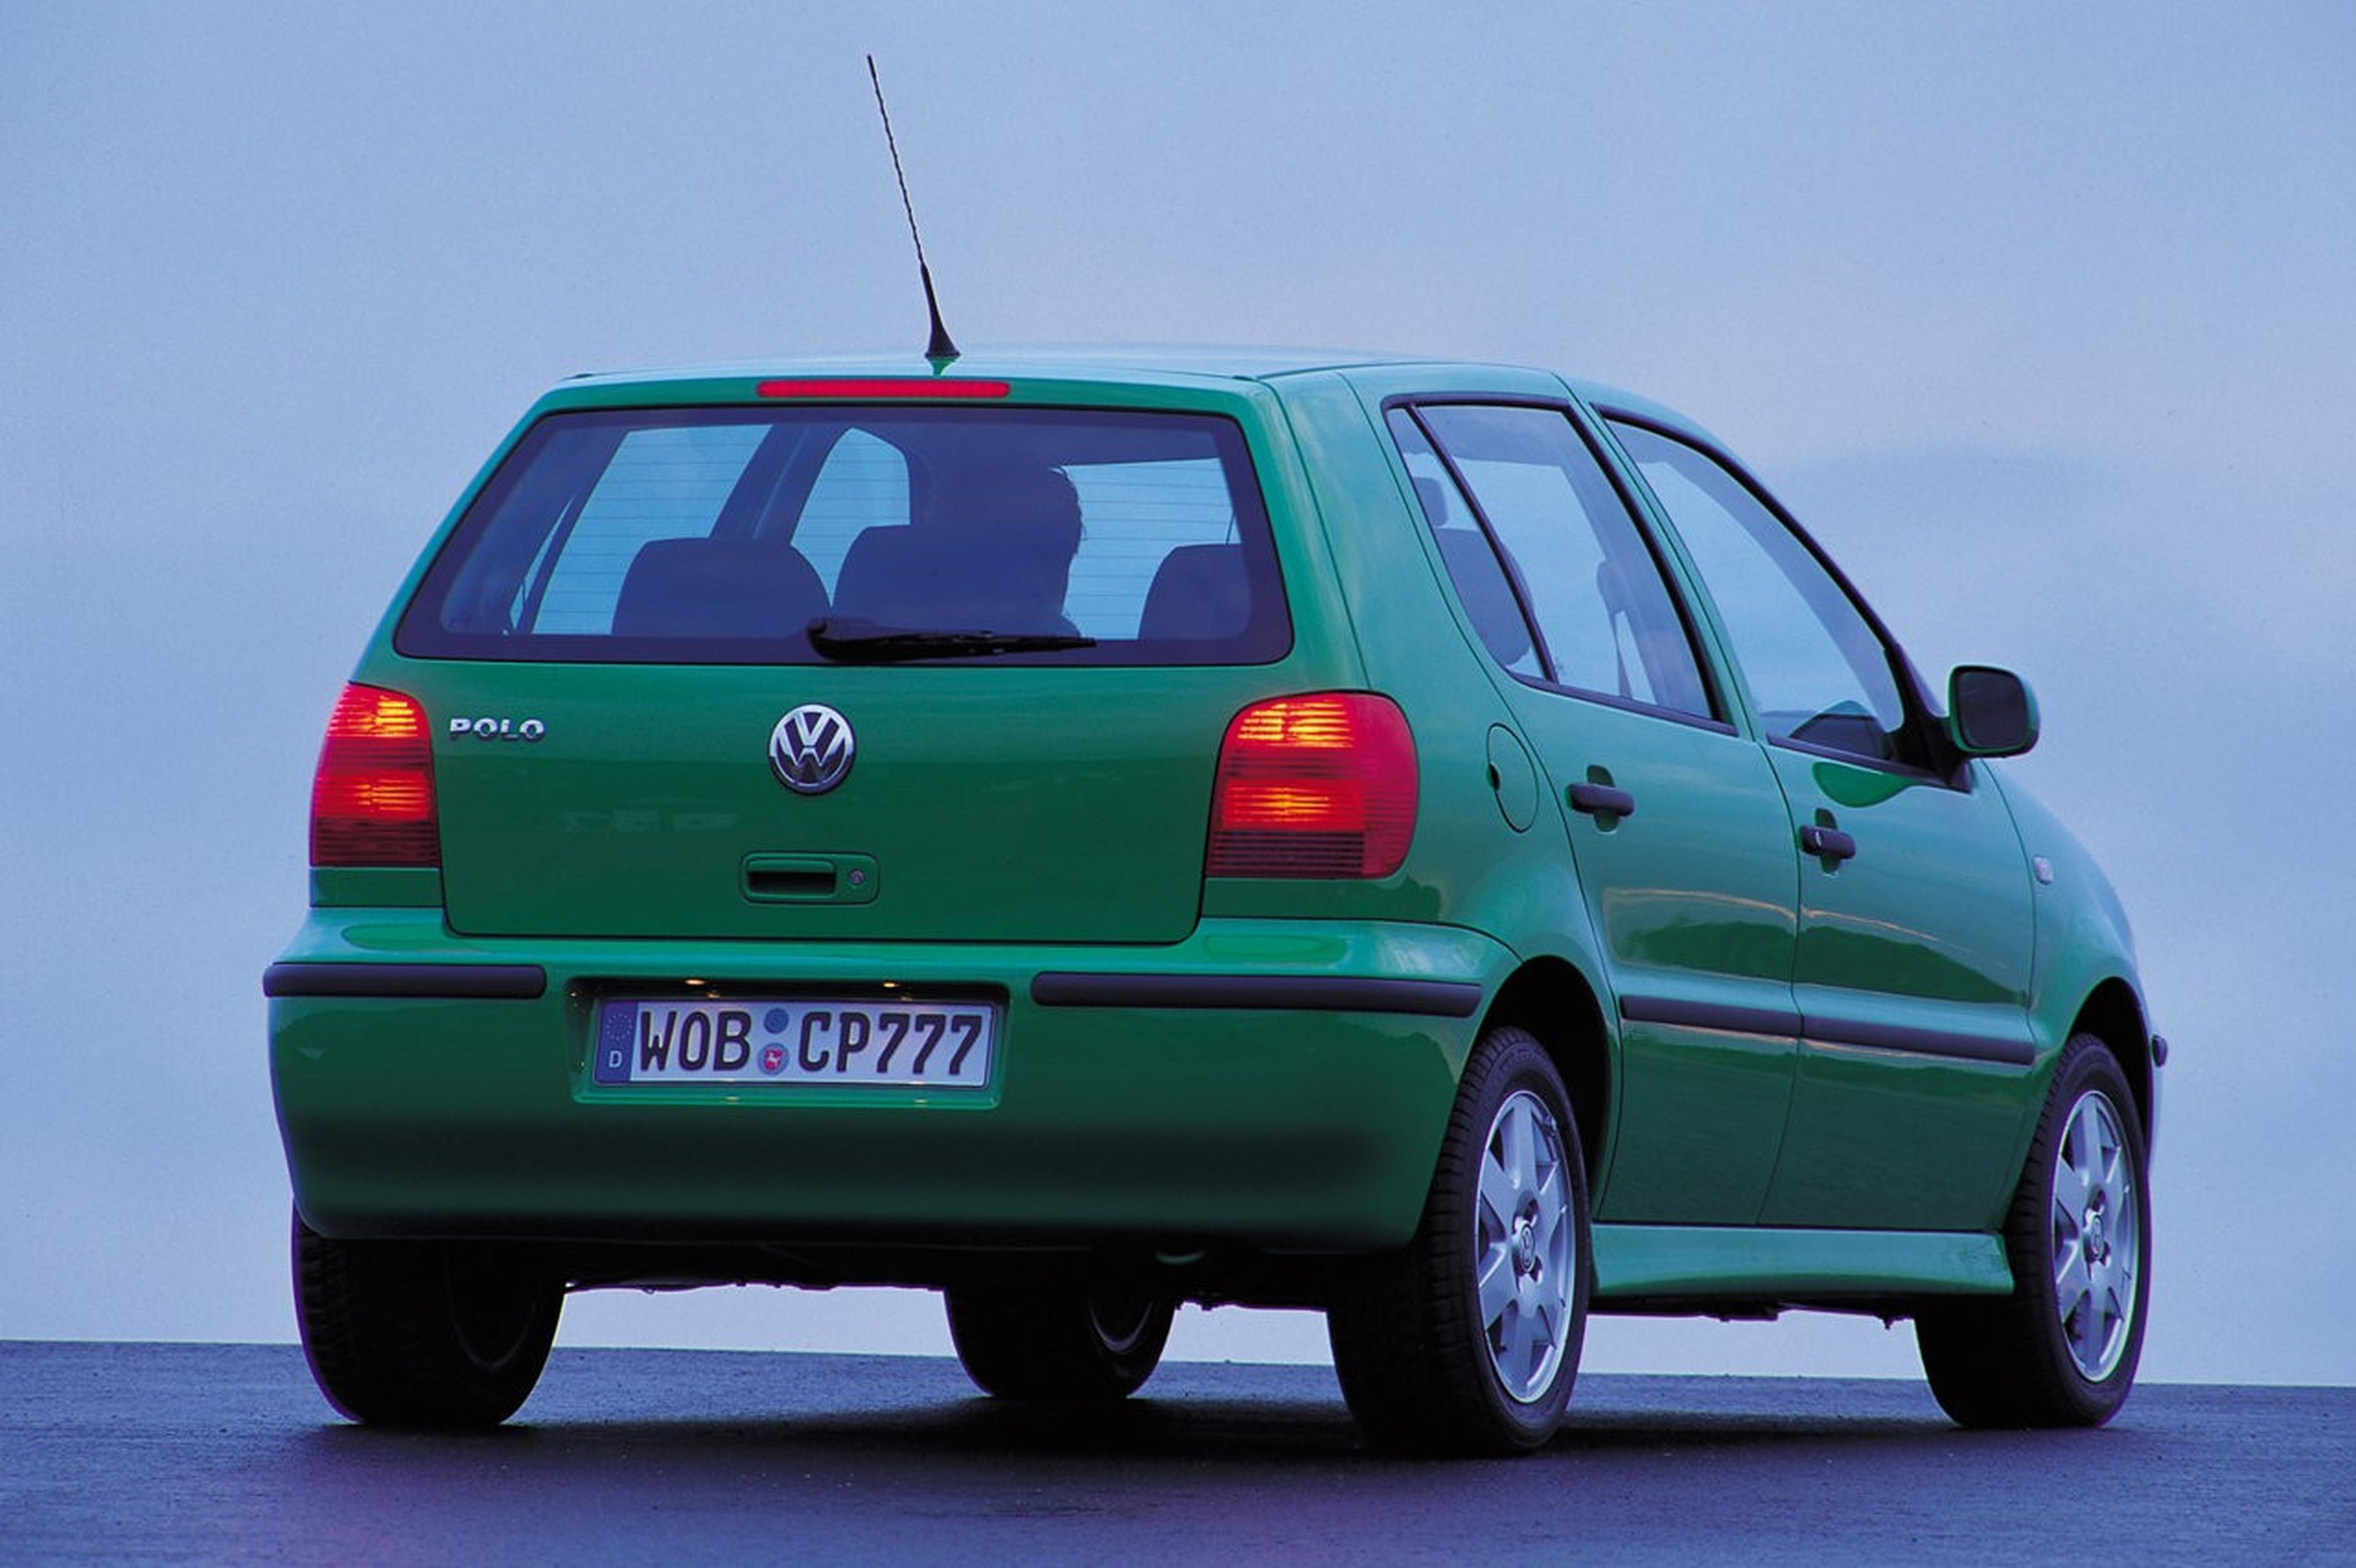 ¿Recuerdas el Volkswagen Polo verde con ZIRITIONE?